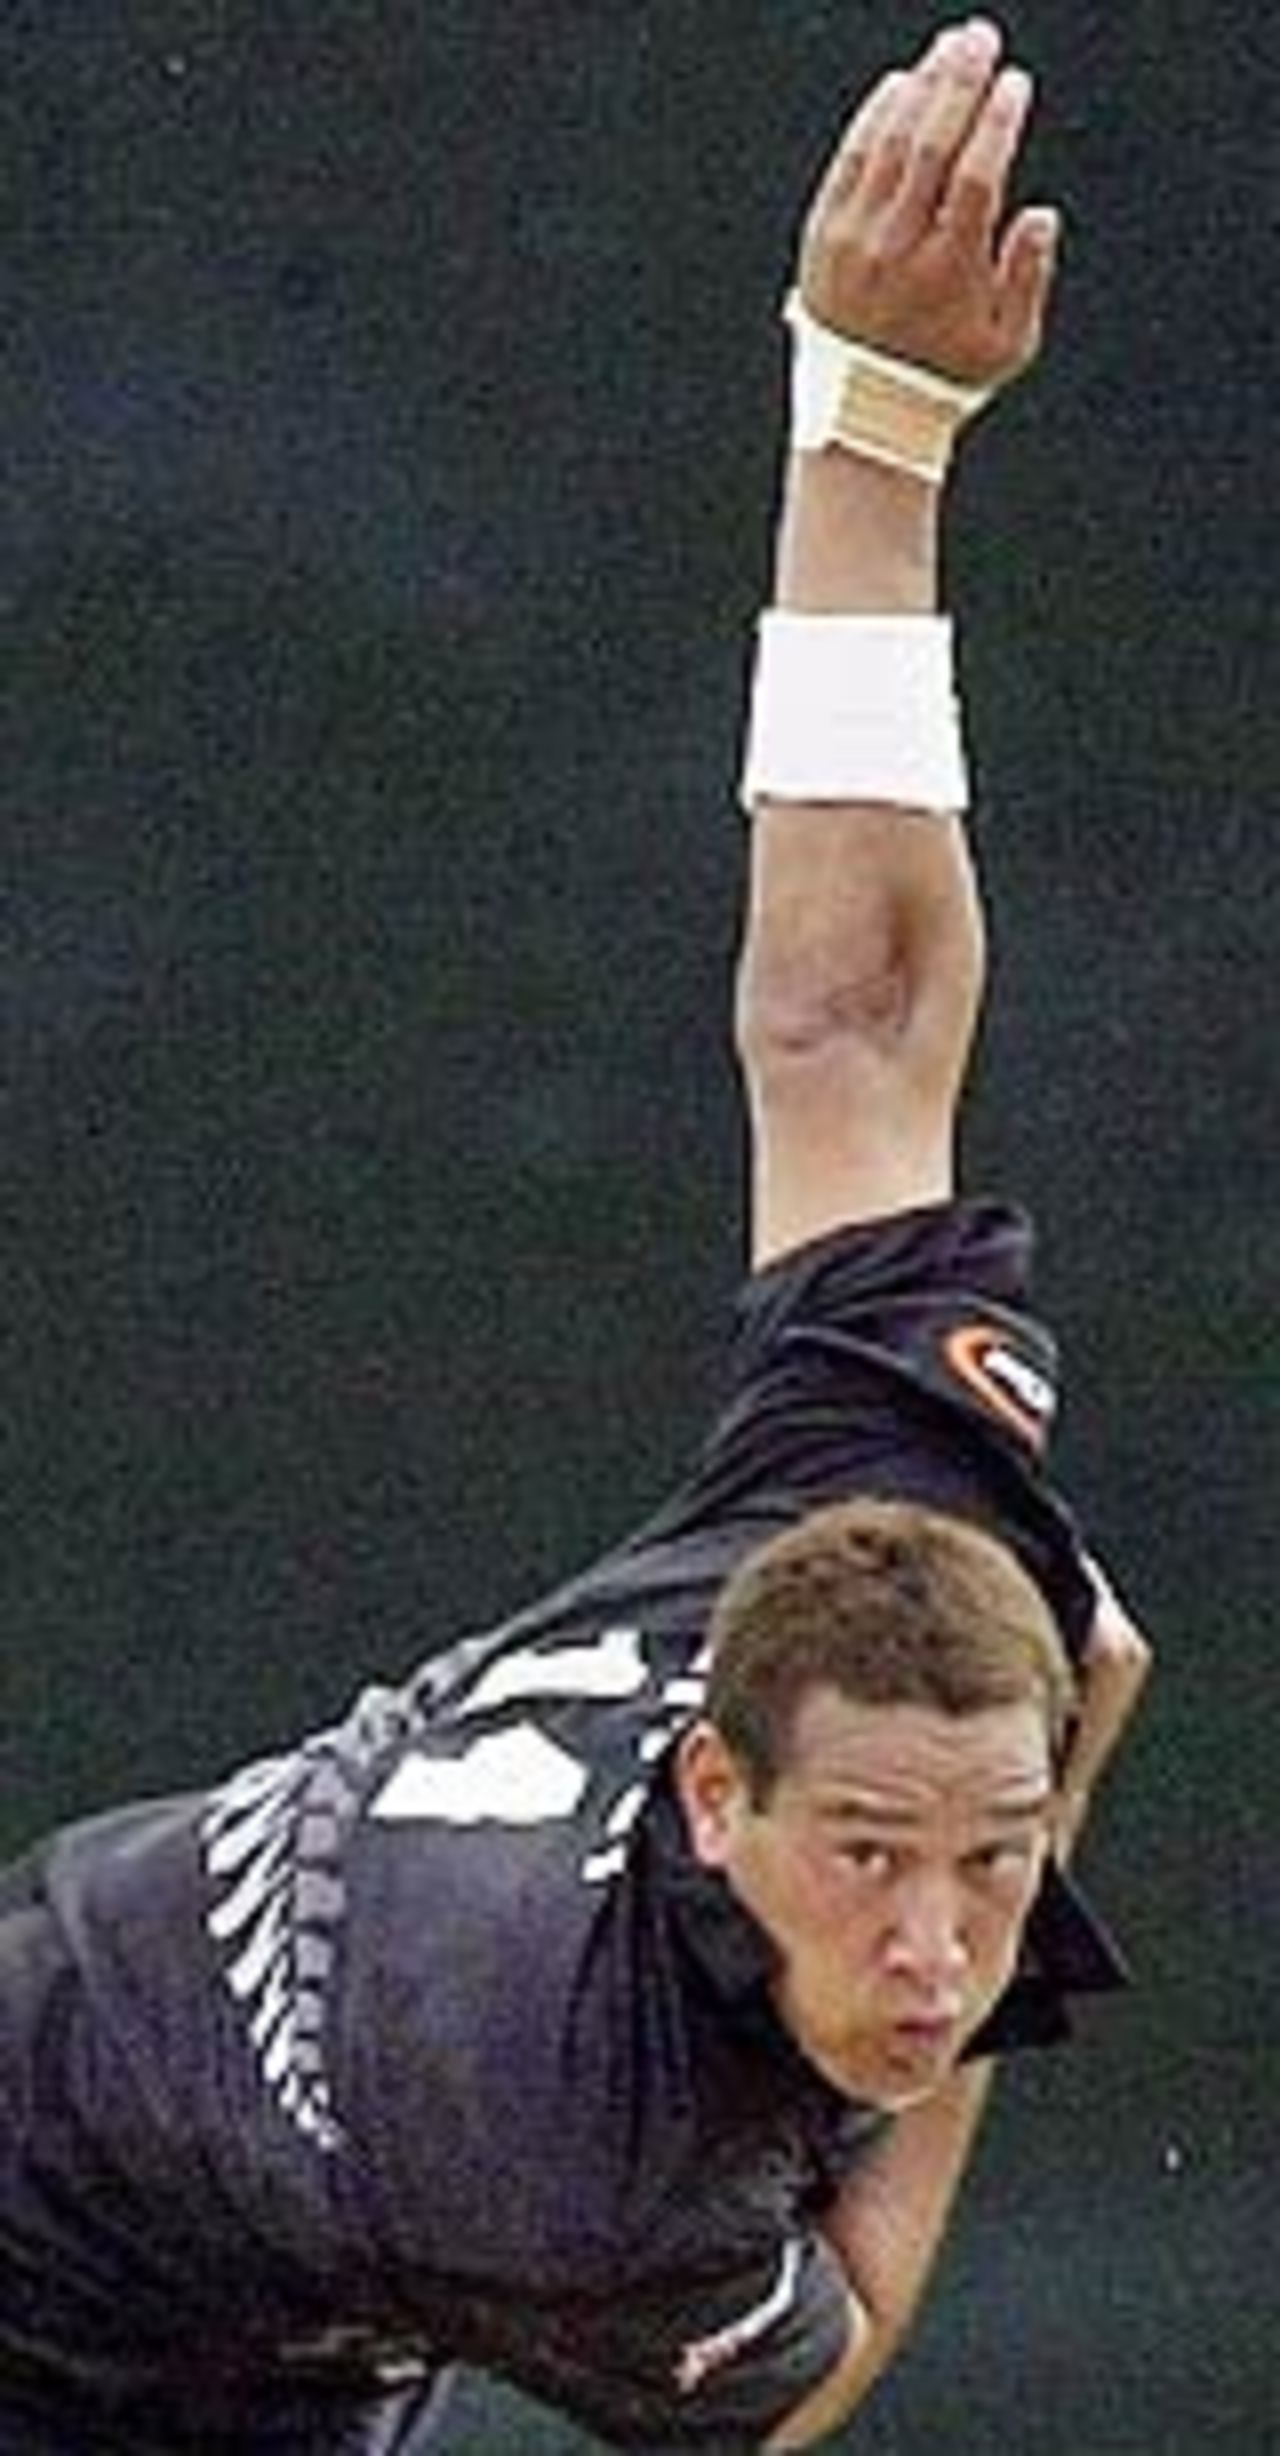 Daryl Tuffey bowls, New Zealand v Sri Lanka, May 11, 2003